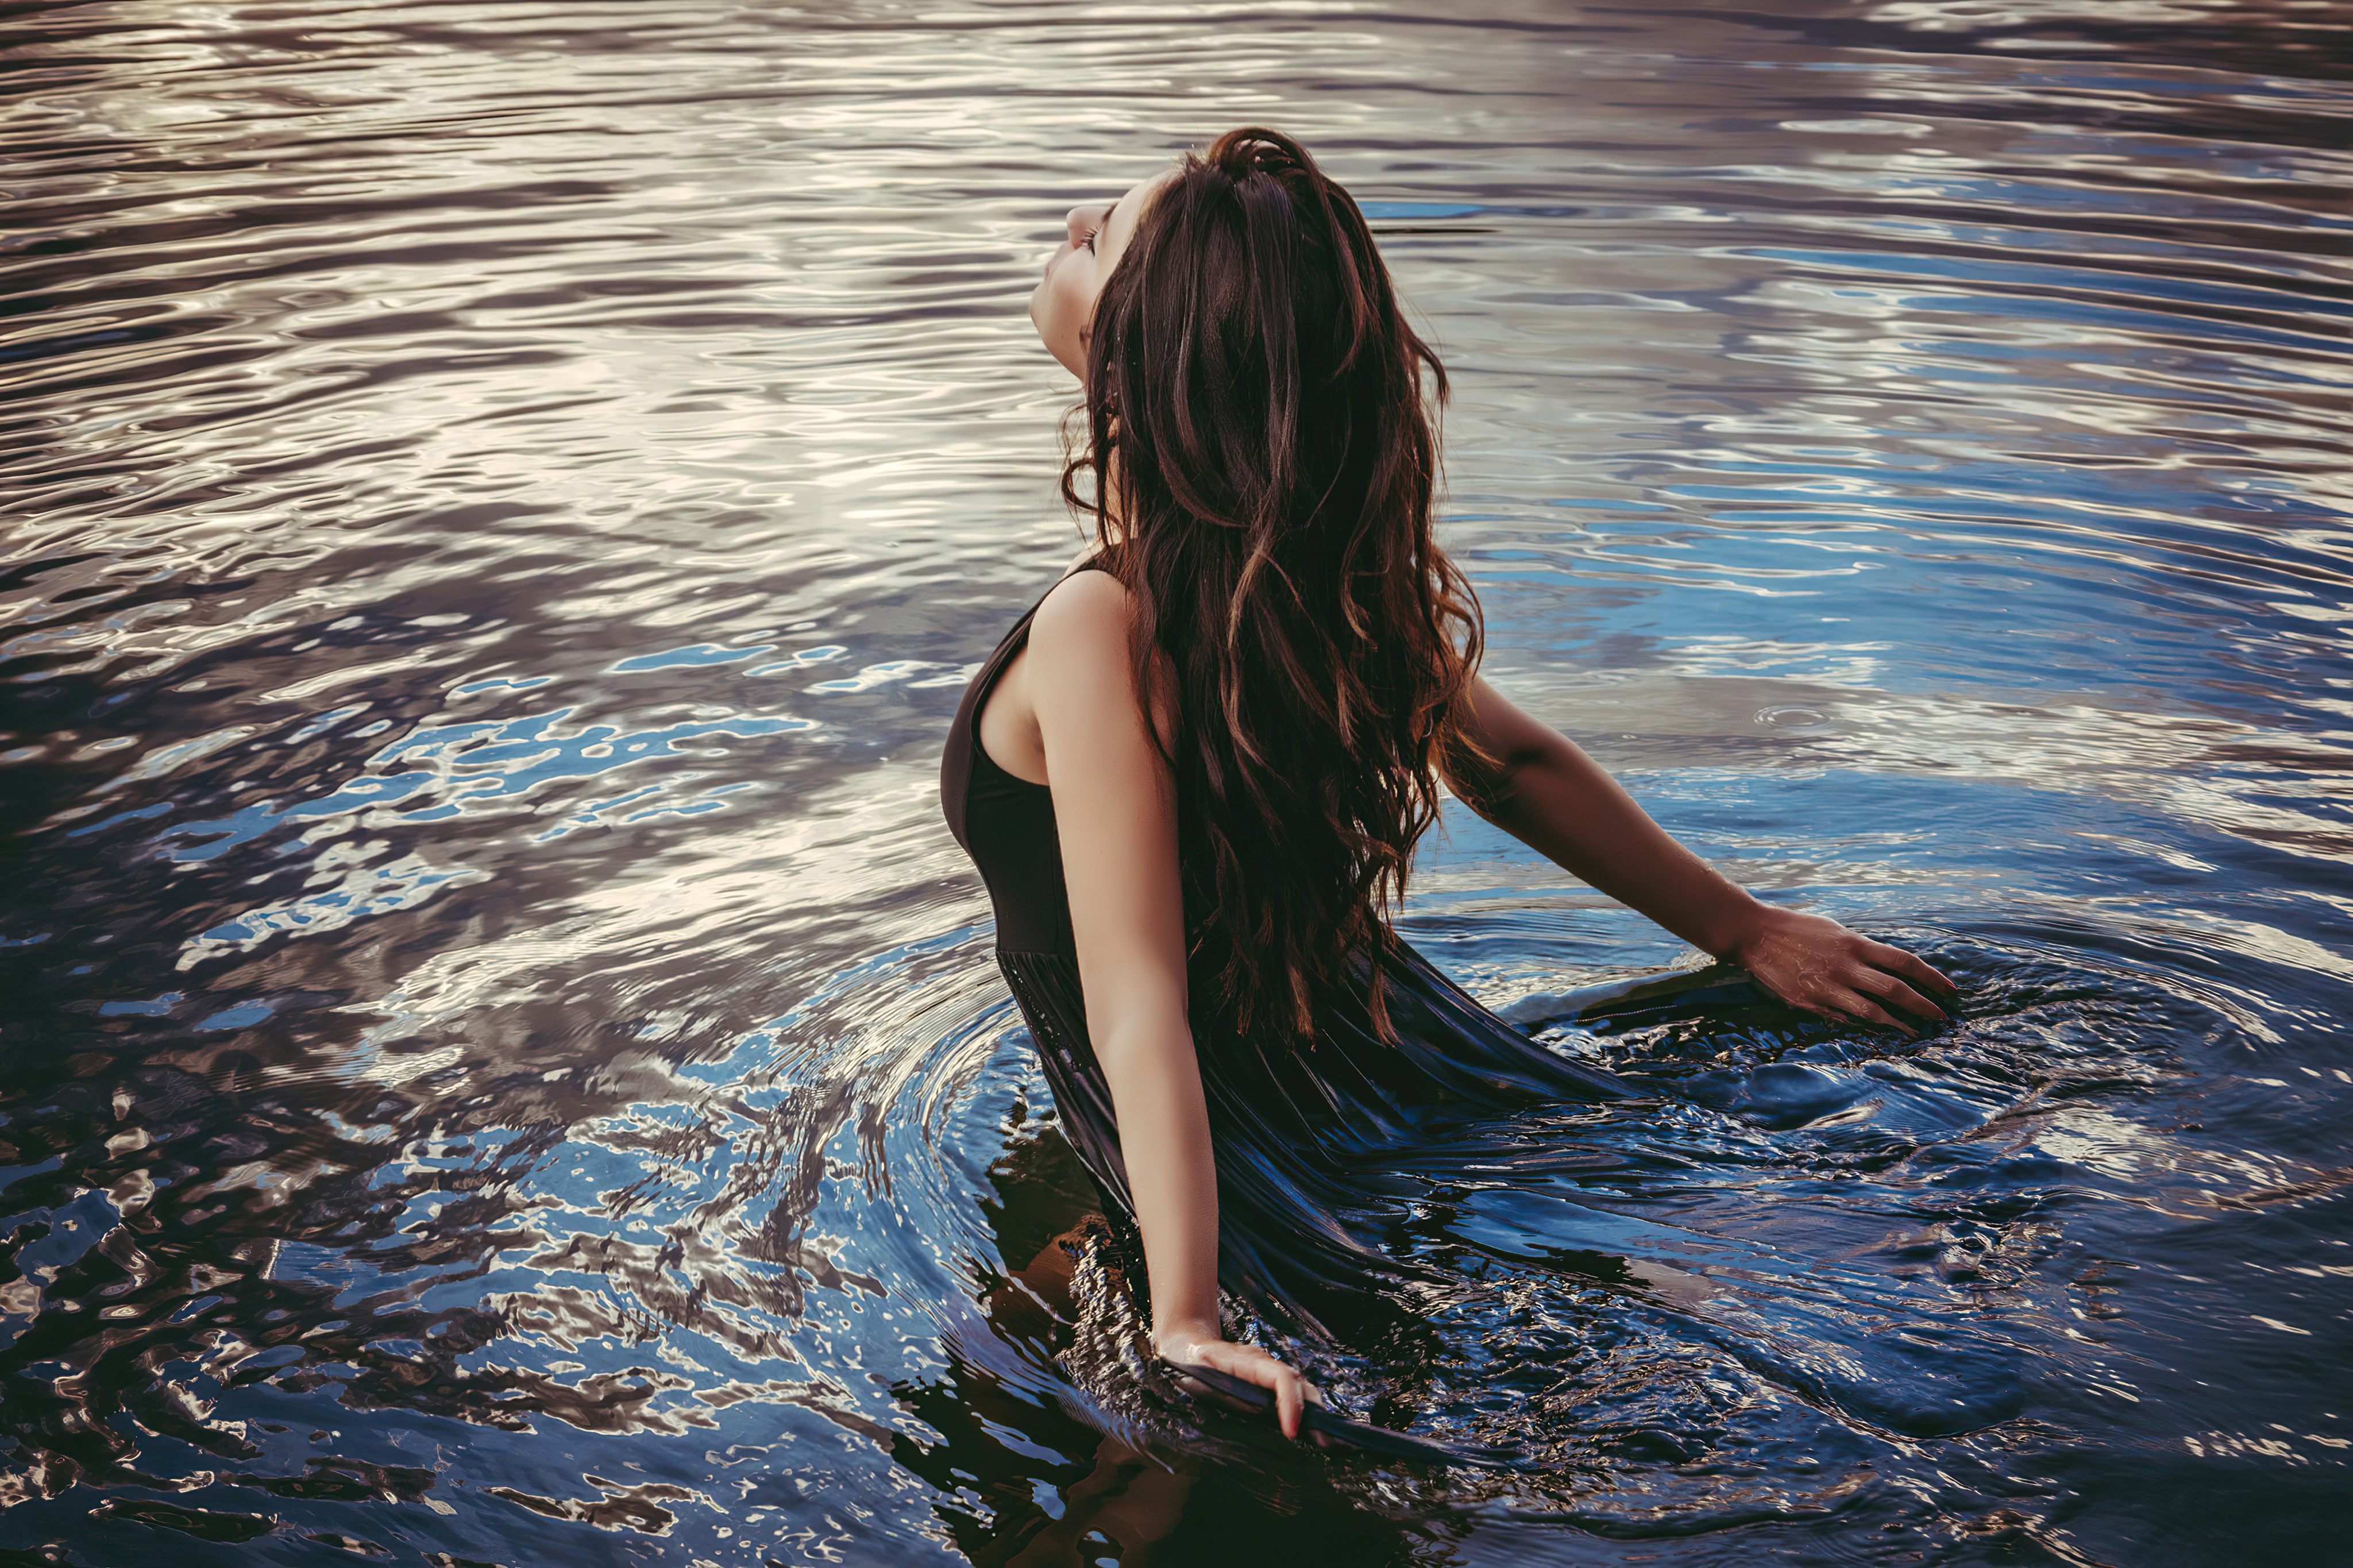 Человек возле реки. Фотосессия в воде. Фотосессия в воде в платье. Девушка в воде. Девушка у реки.